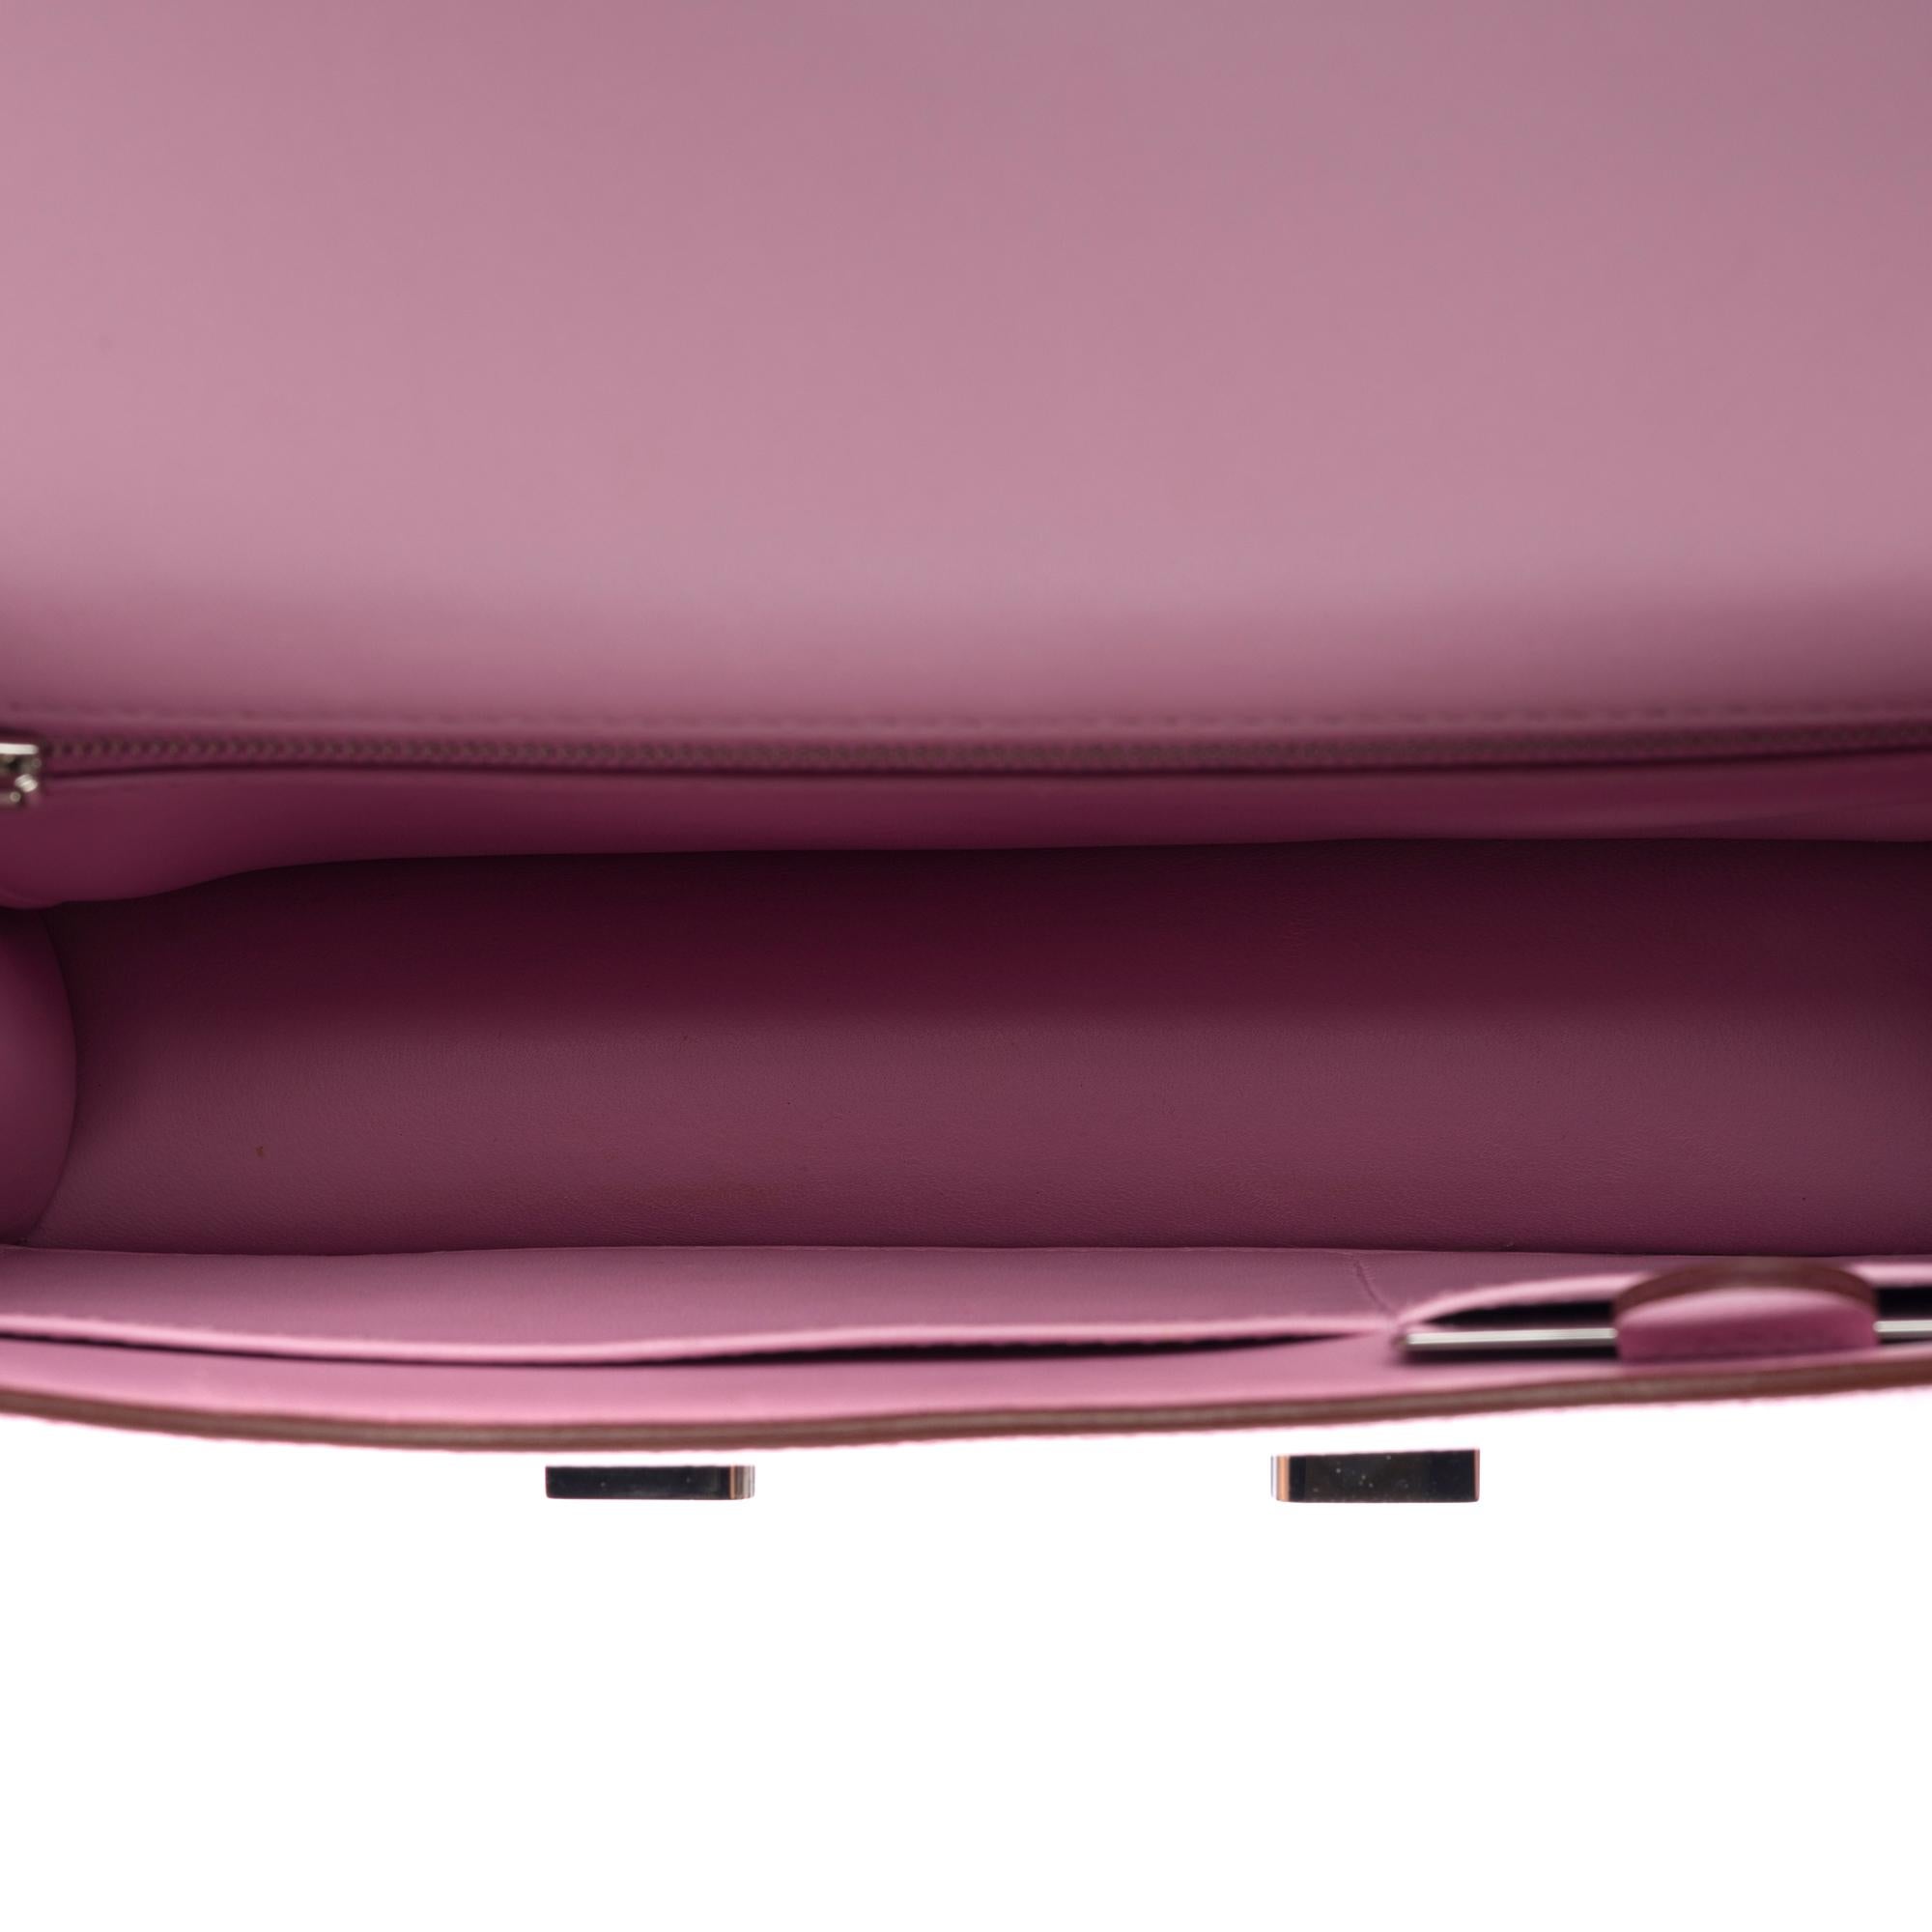 Hermès Constance 23 Mirror shoulder bag in Mauve Sylvestre Epsom leather , SHW 3